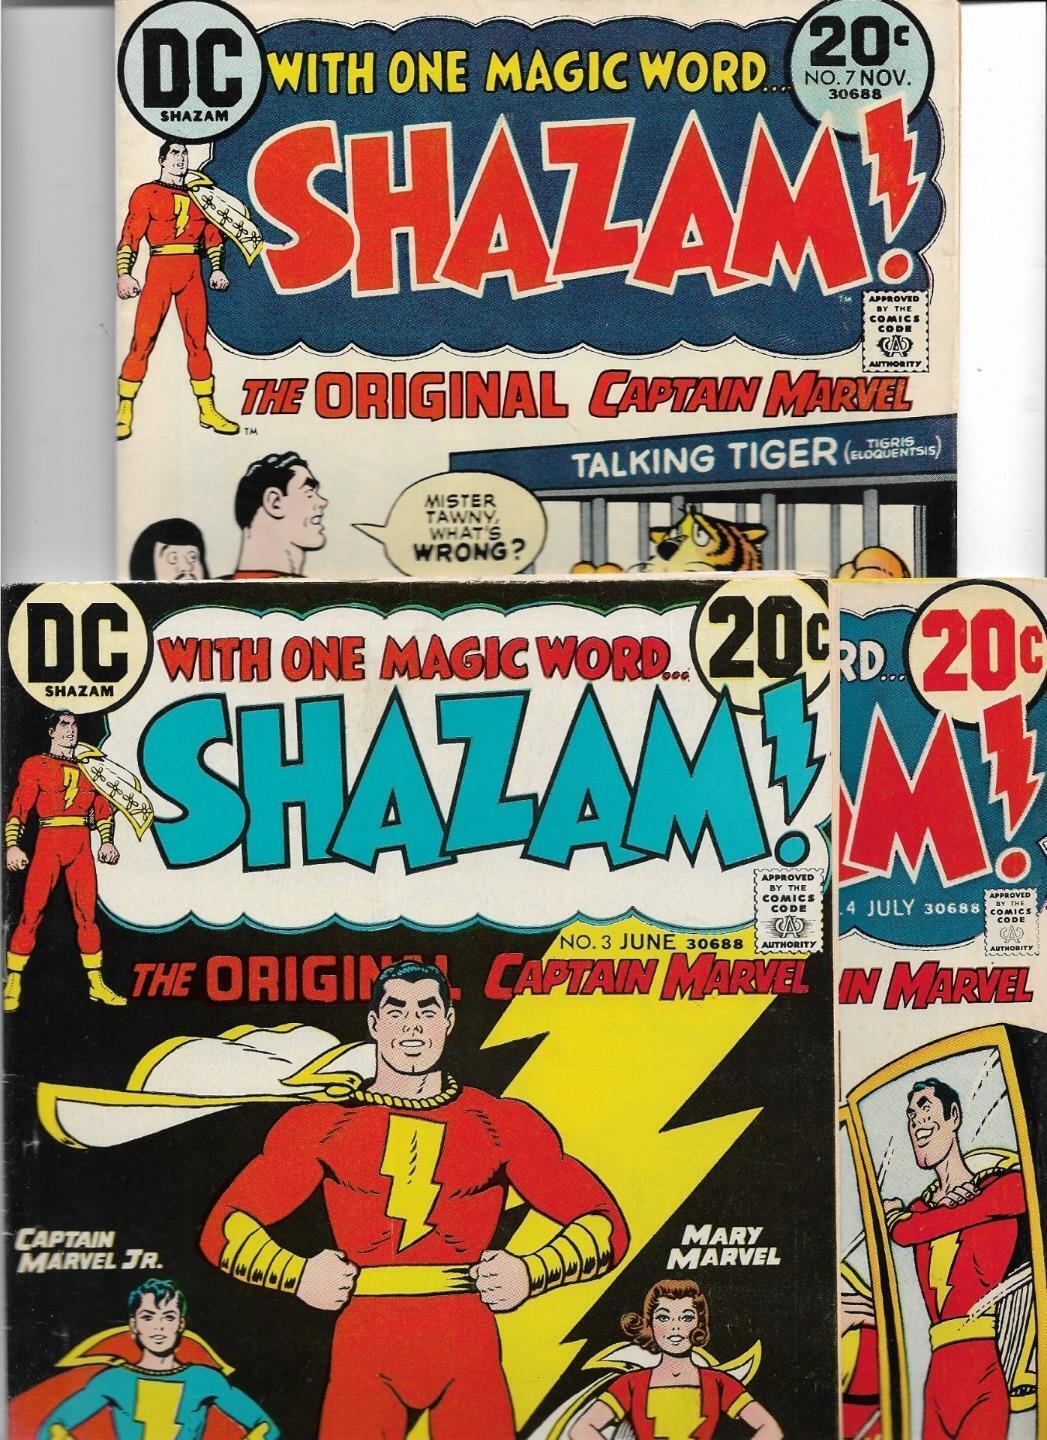 SHAZAM #3 #4 #7 1973 VERY GOOD-FINE 5.0 3492 MARY MARVEL CAPTAIN MARVEL JR.